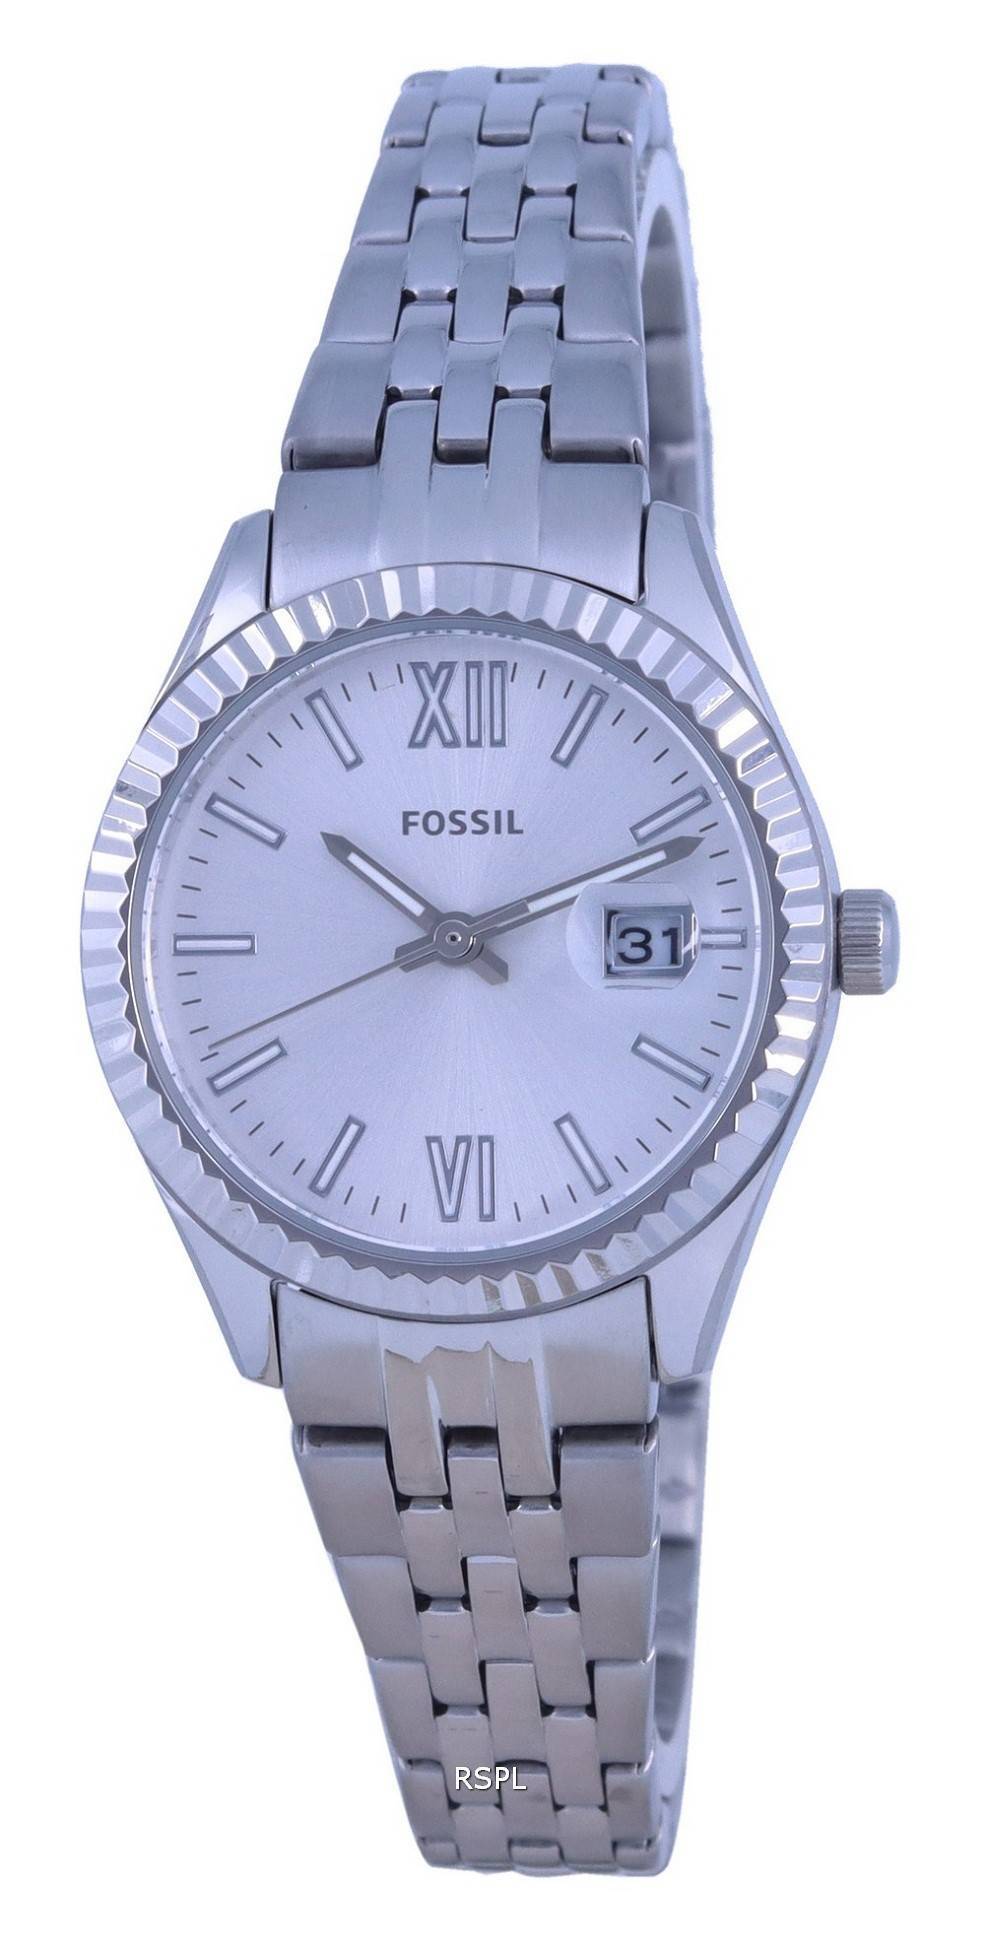 화석 스칼렛 마이크로 은 다이얼 스테인레스 스틸 쿼츠 ES4991 여성용 시계